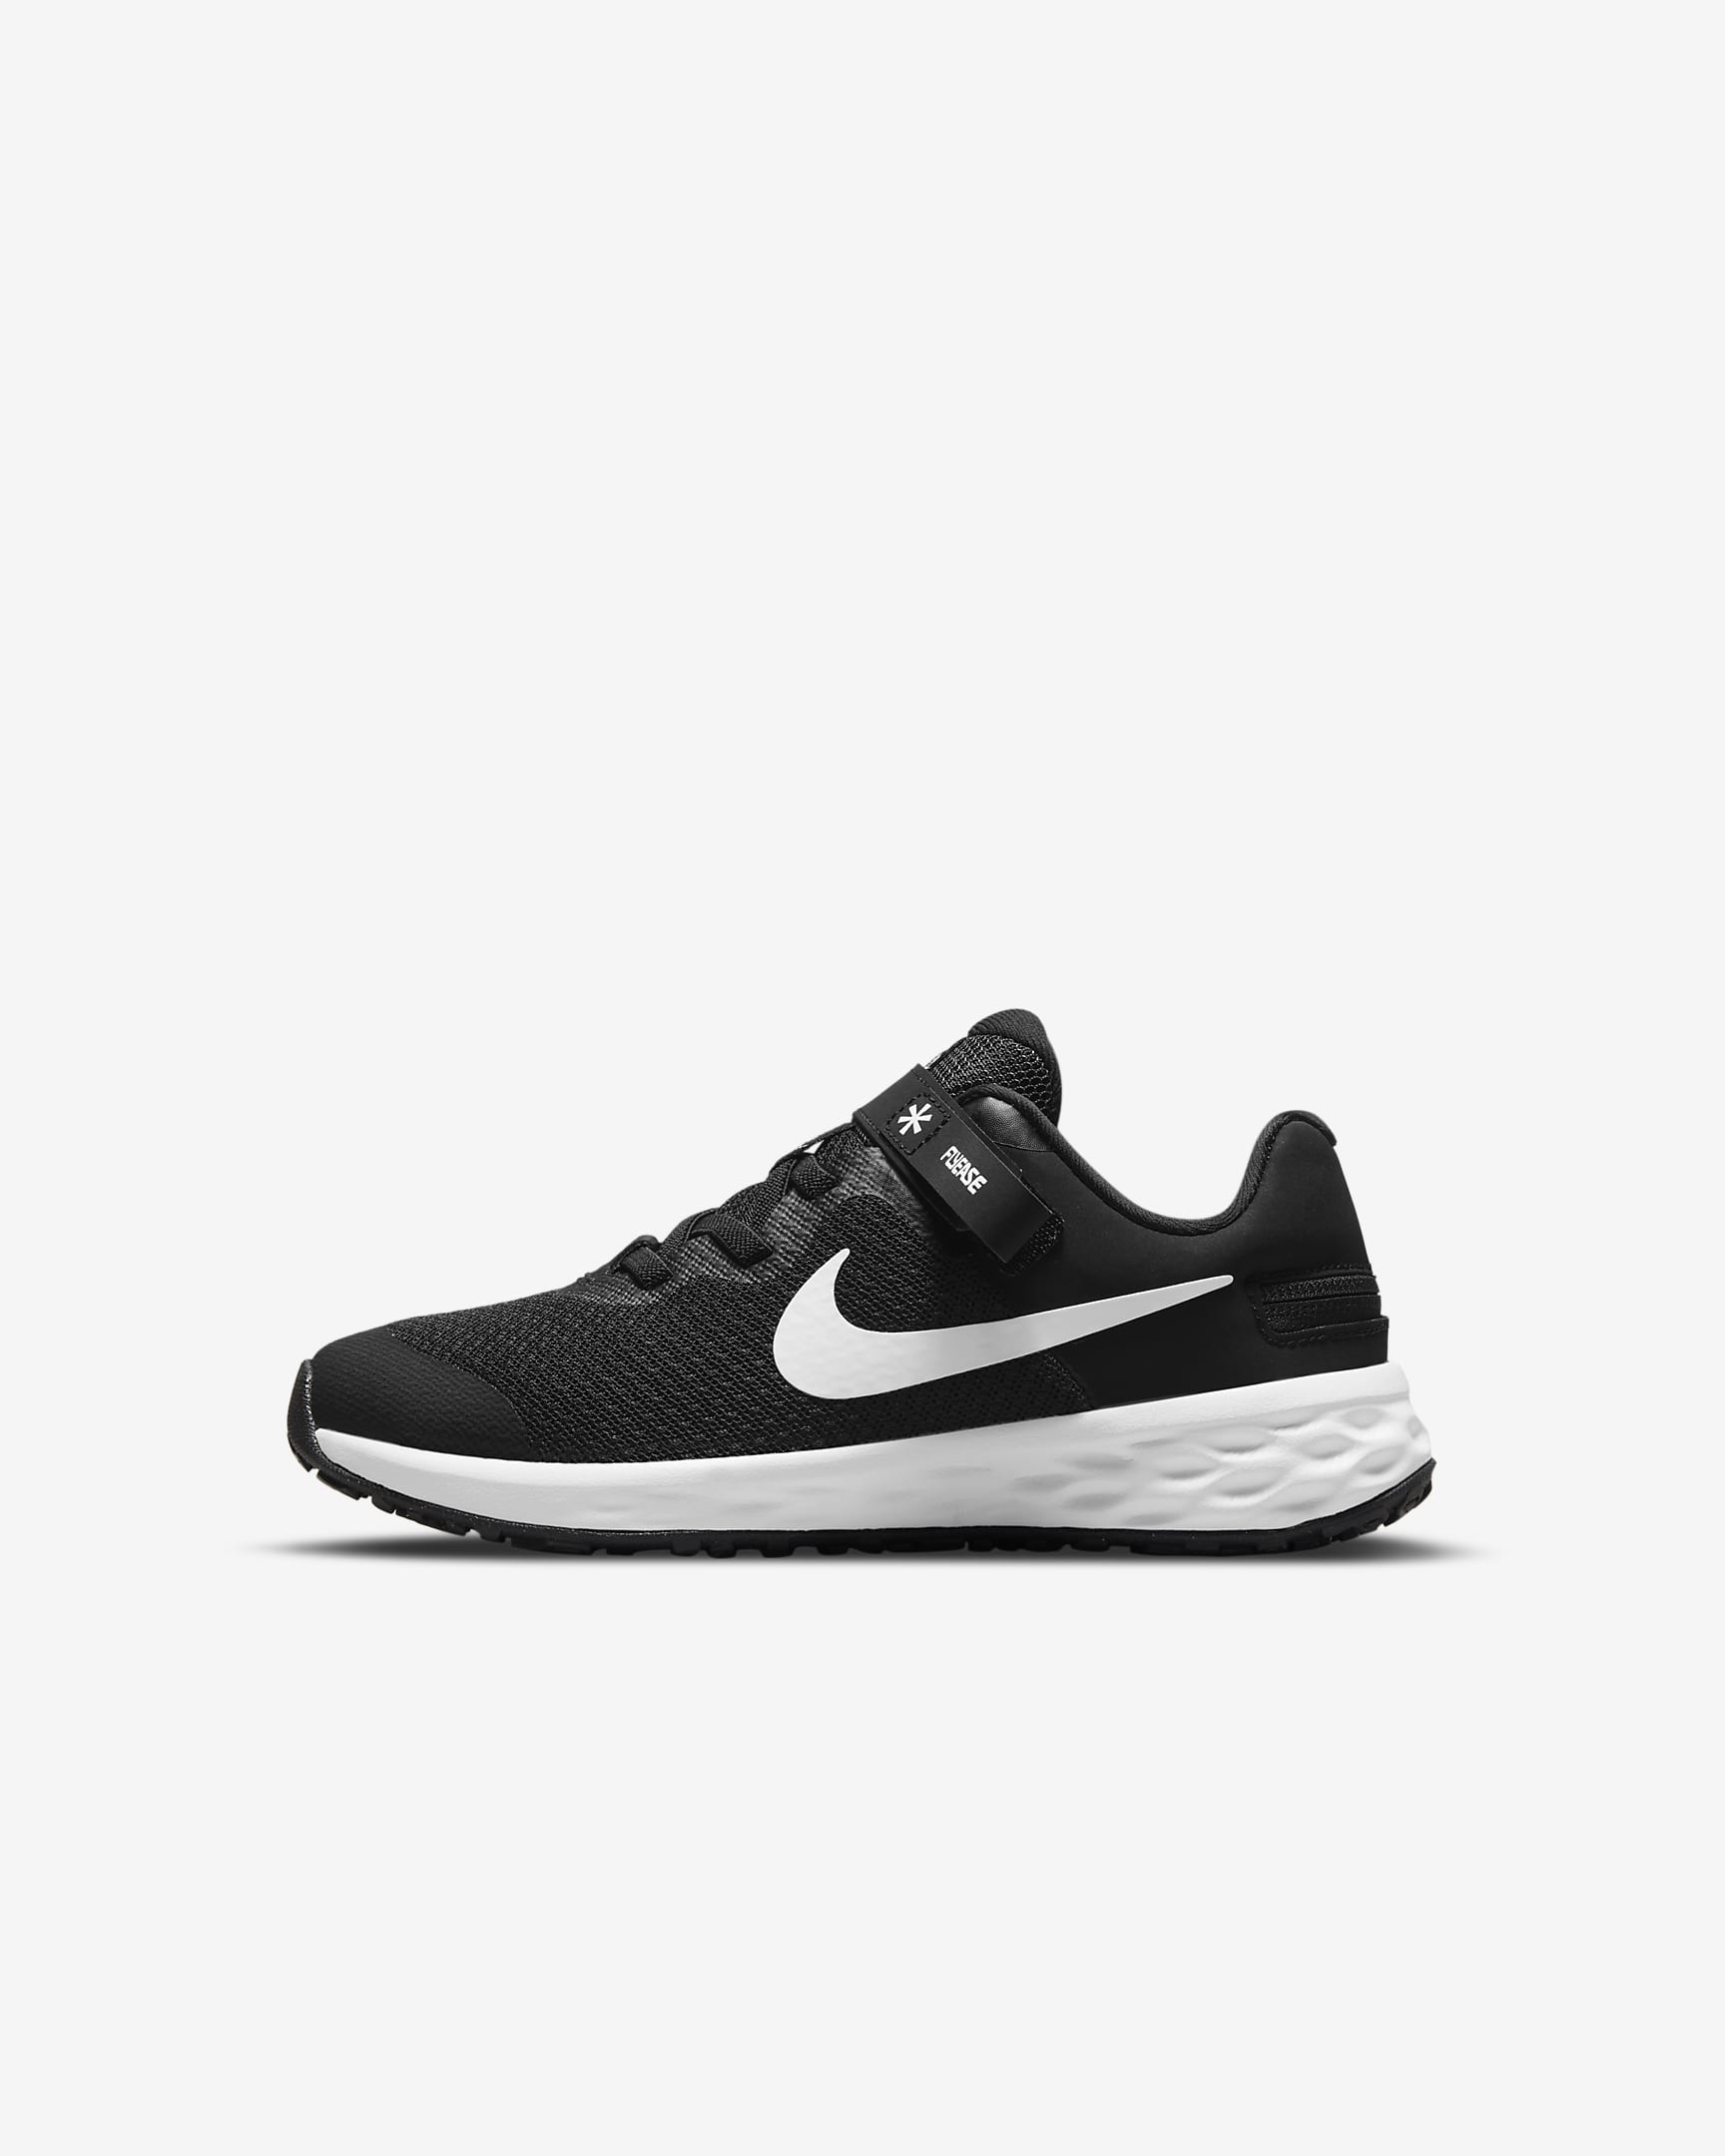 Nike Revolution 6 FlyEase Zapatillas fáciles de poner y quitar - Niño/a pequeño/a - Negro/Dark Smoke Grey/Blanco